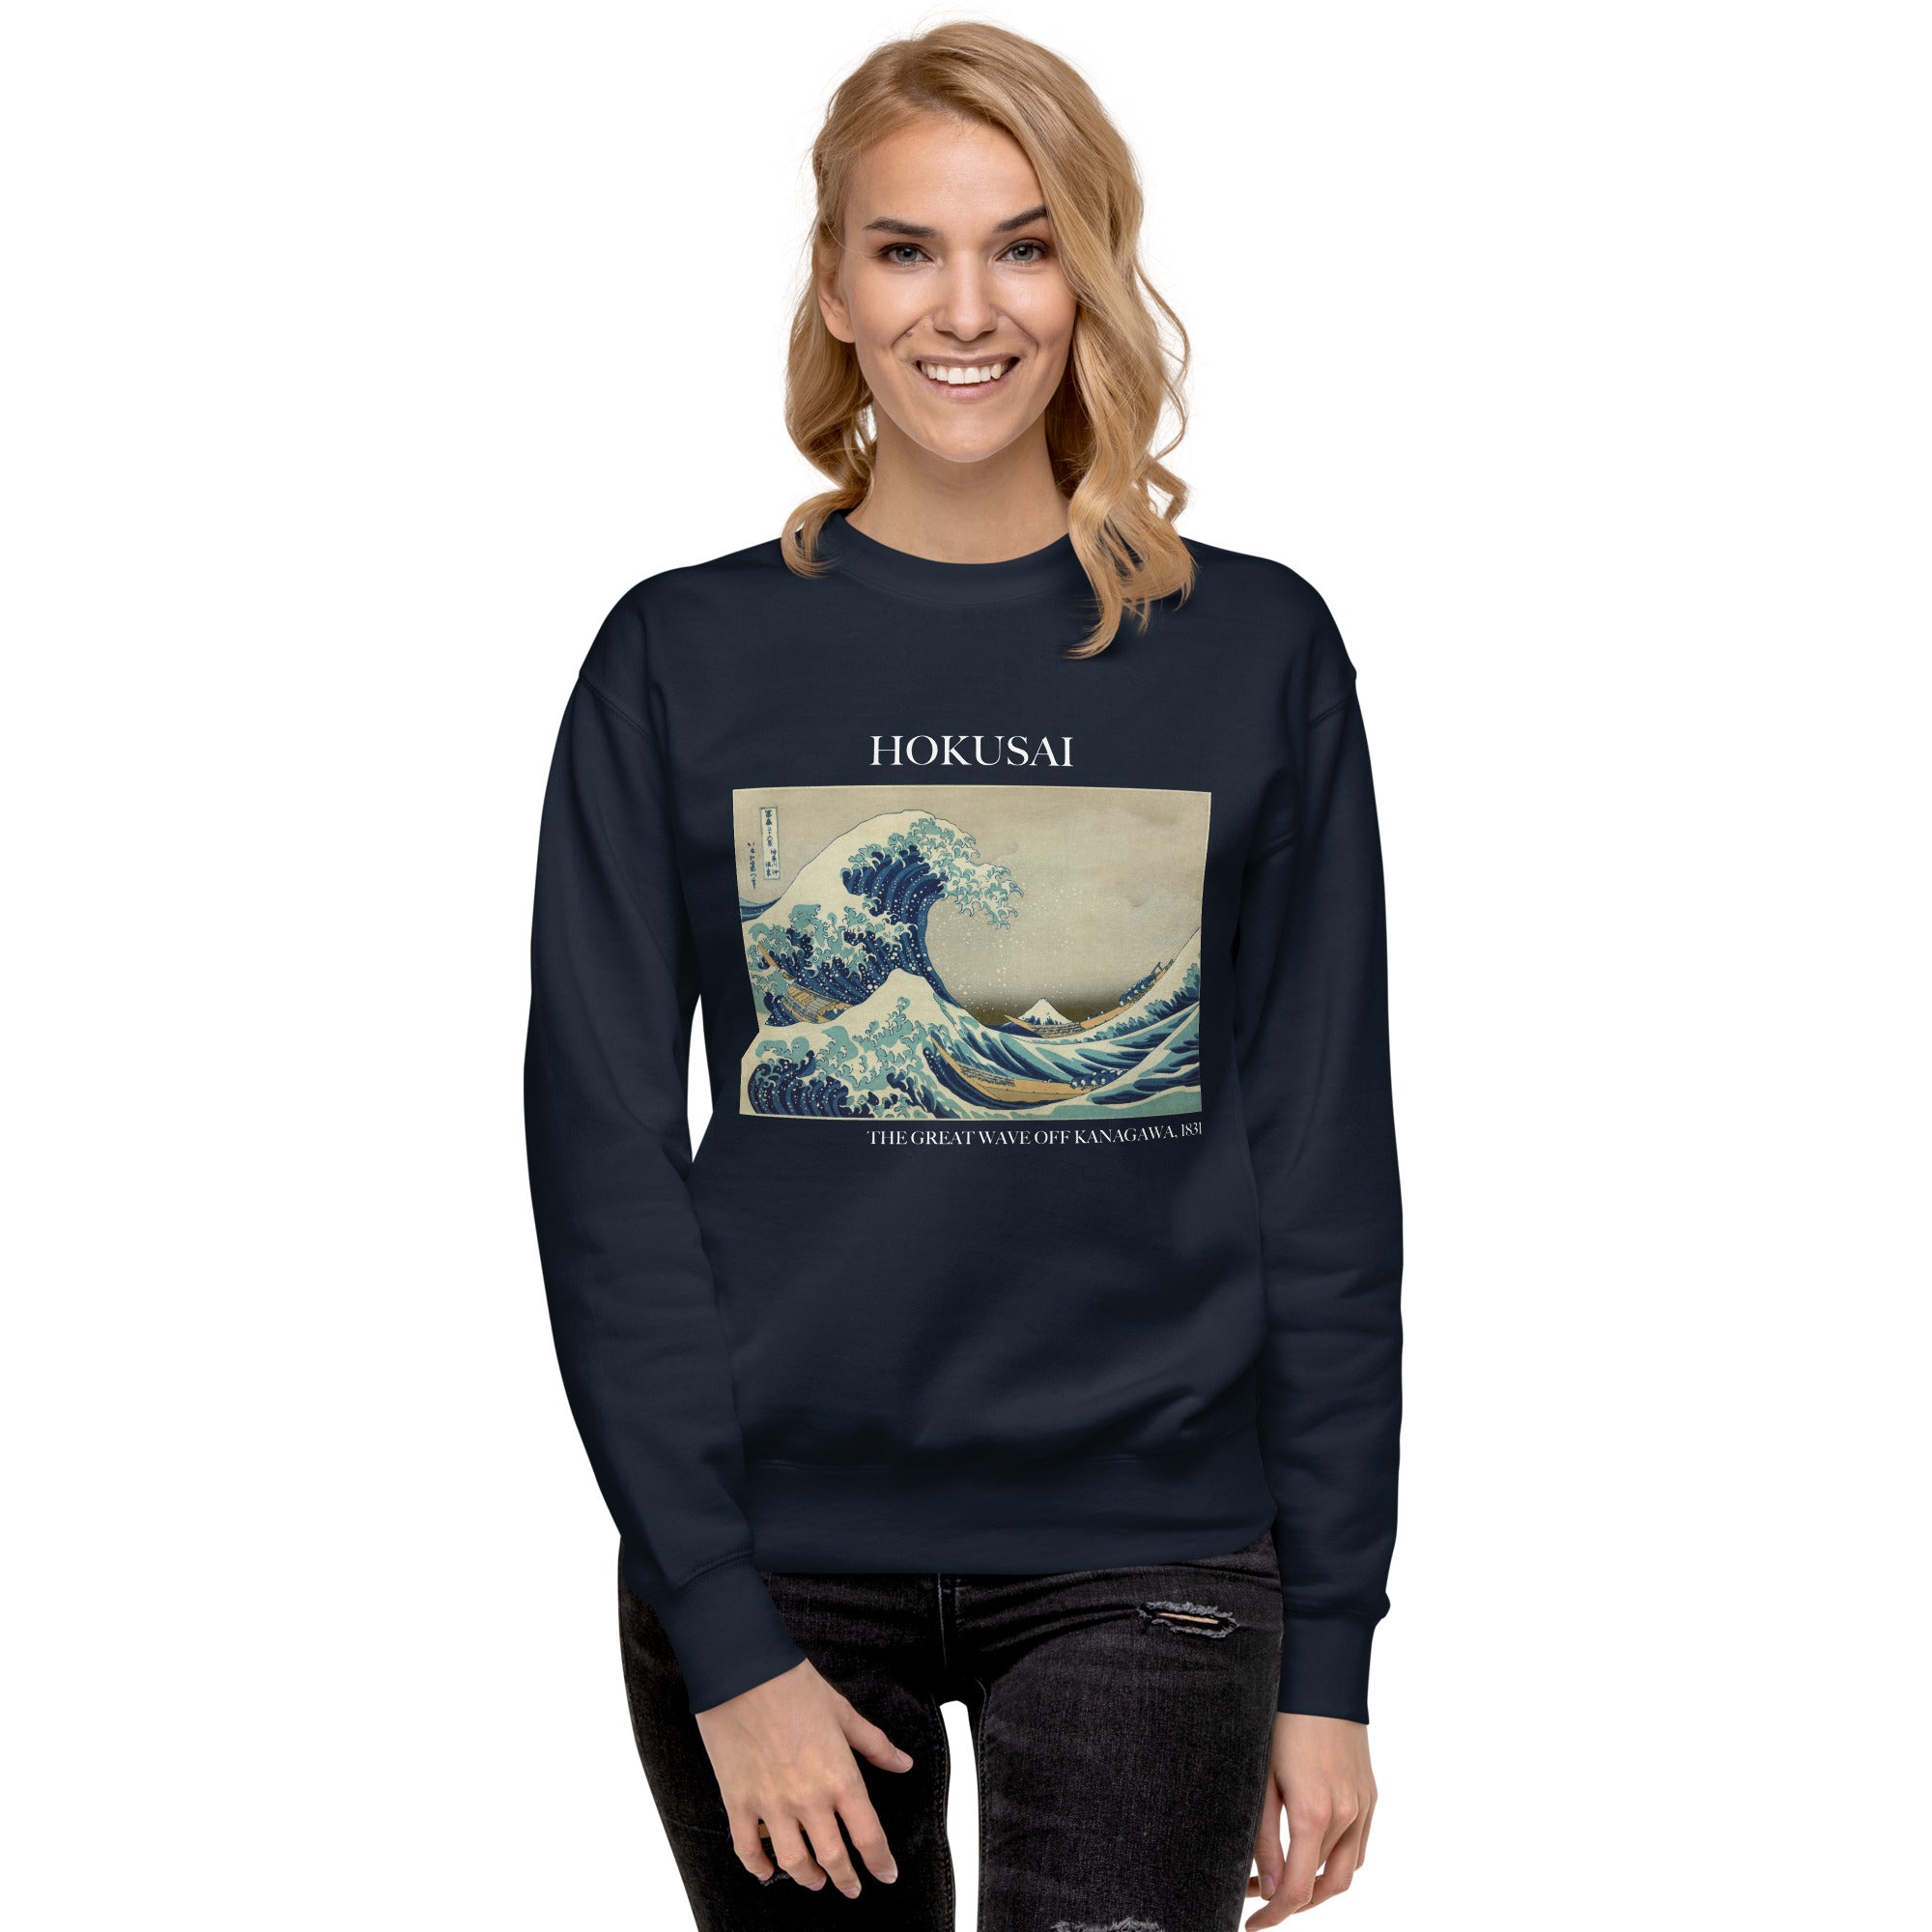 Sweatshirt mit berühmtem Gemälde „Die große Welle vor Kanagawa“ von Hokusai | Premium-Sweatshirt für Unisex